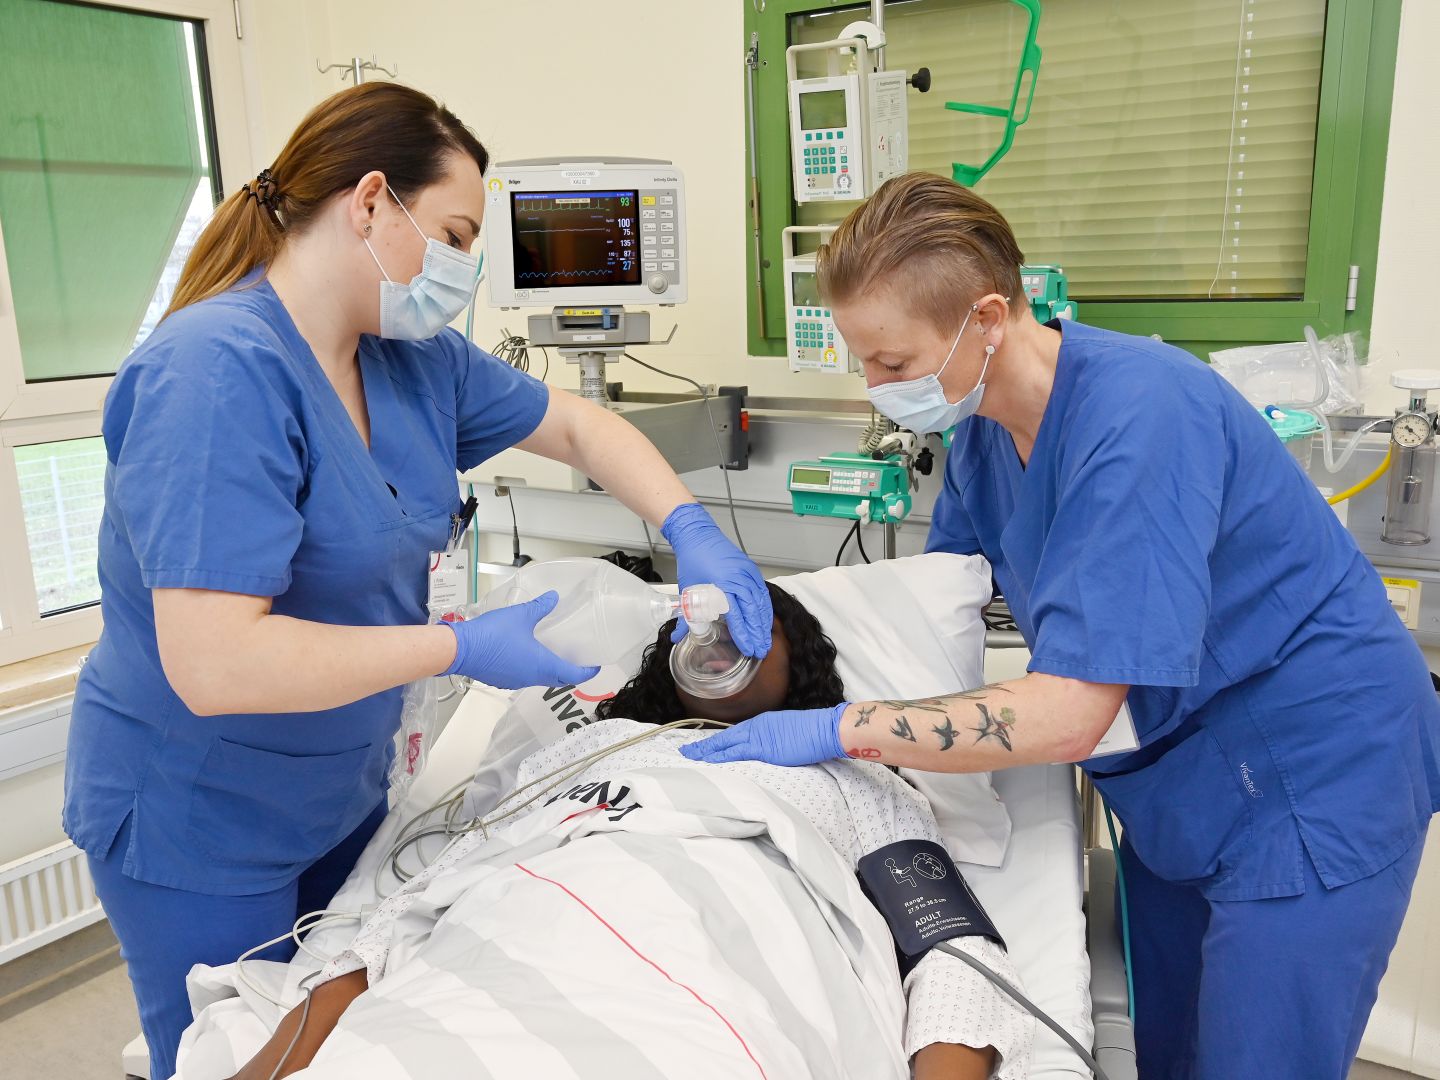 Pflege im Krankenhaus in Berlin-Kreuzberg: Zwei weibliche Pflegekräfte stehen an einer OP-Liege, in der eine Patientin liegt. Die Pflegerin links beatmet die Patientin mithilfe eines Beatmungsbeutels.